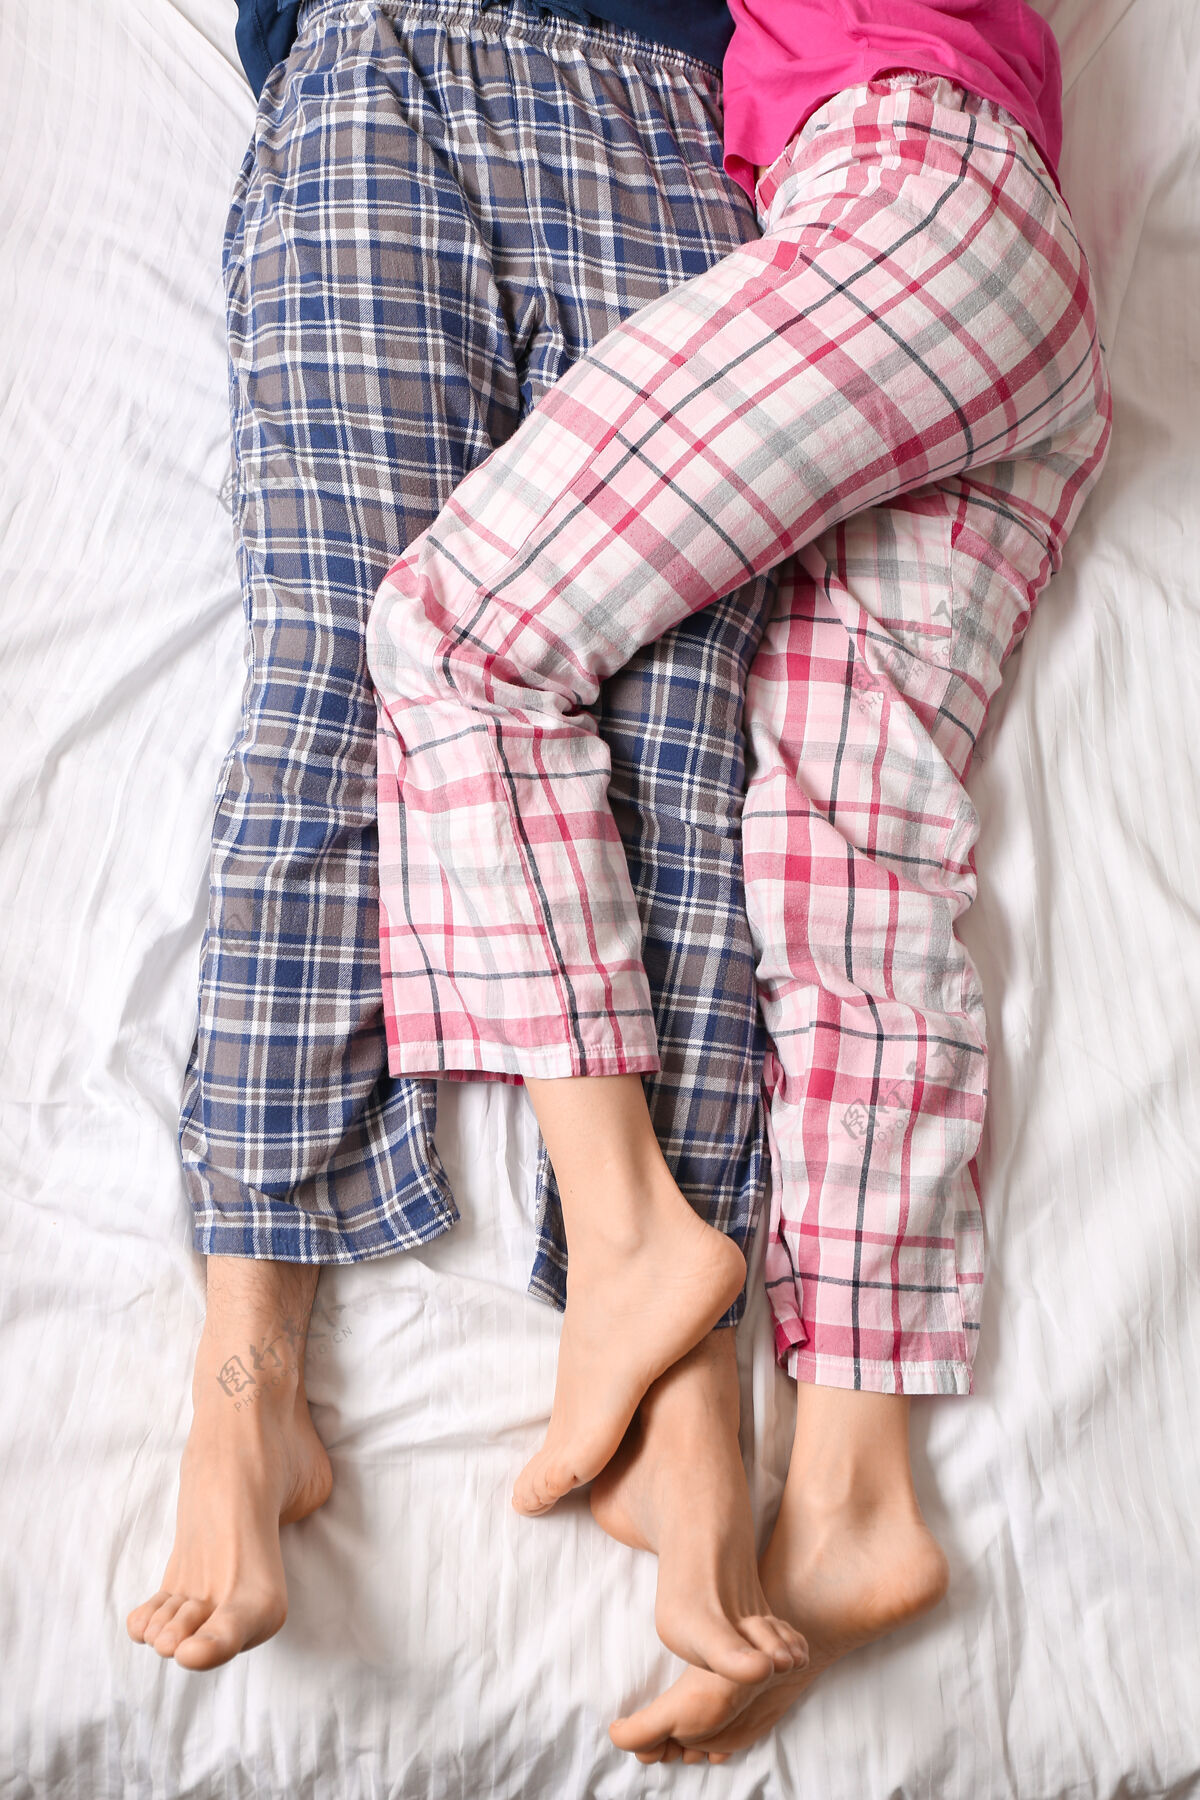 早起躺在床上的年轻夫妇 顶视图男人腿早晨